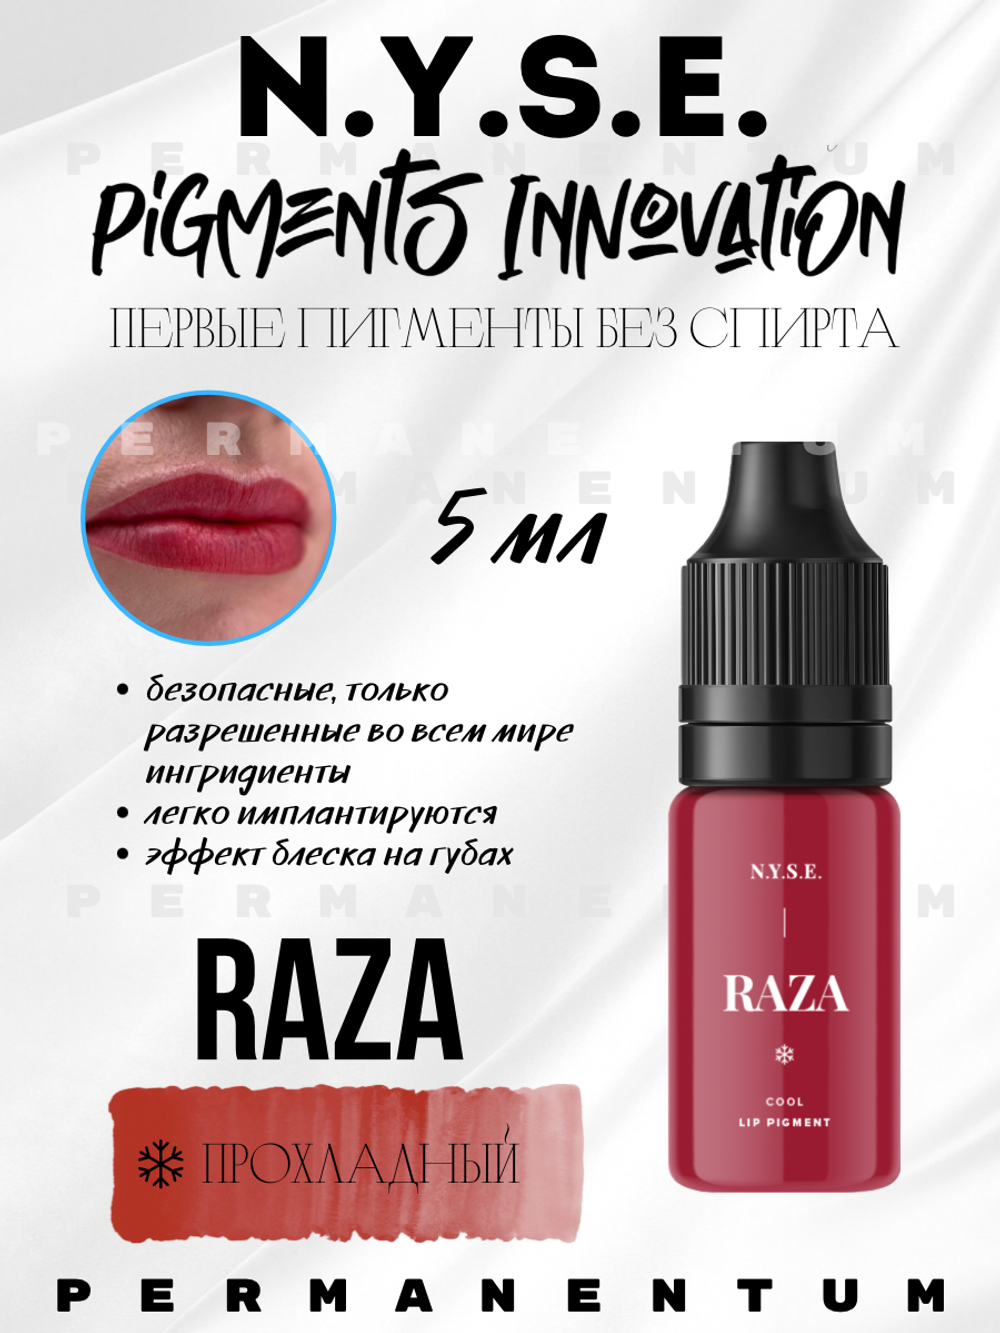 Пигмент для губ INNOVATION "RAZA" от Алёны Пестовой